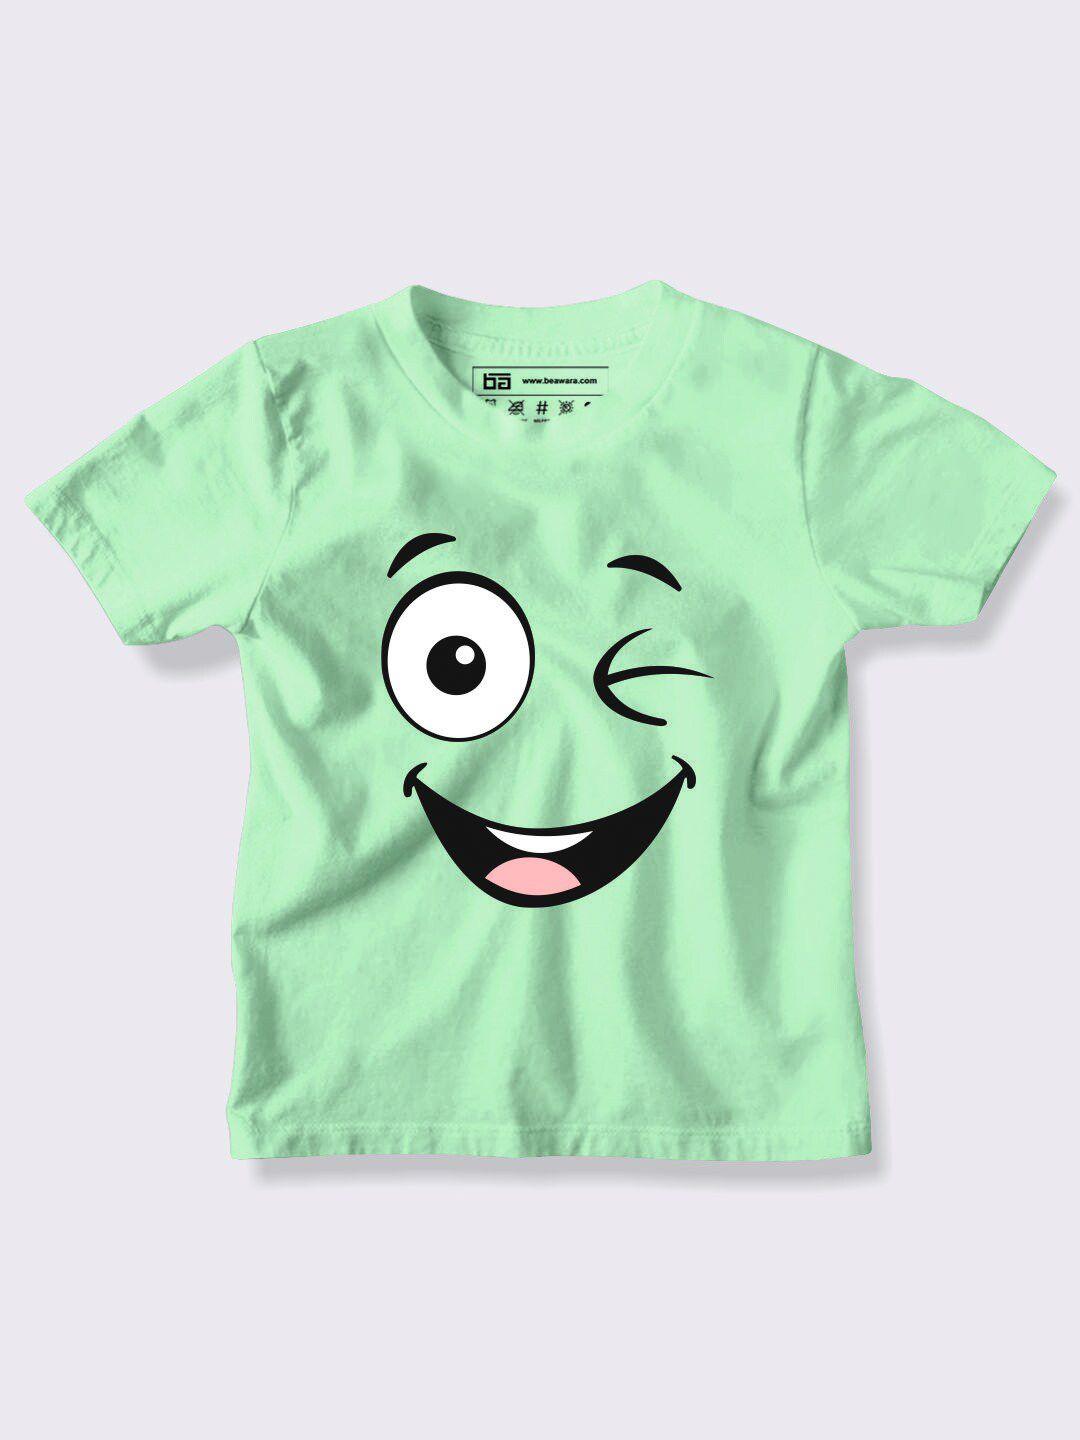 be awara kids lime green printed t-shirt